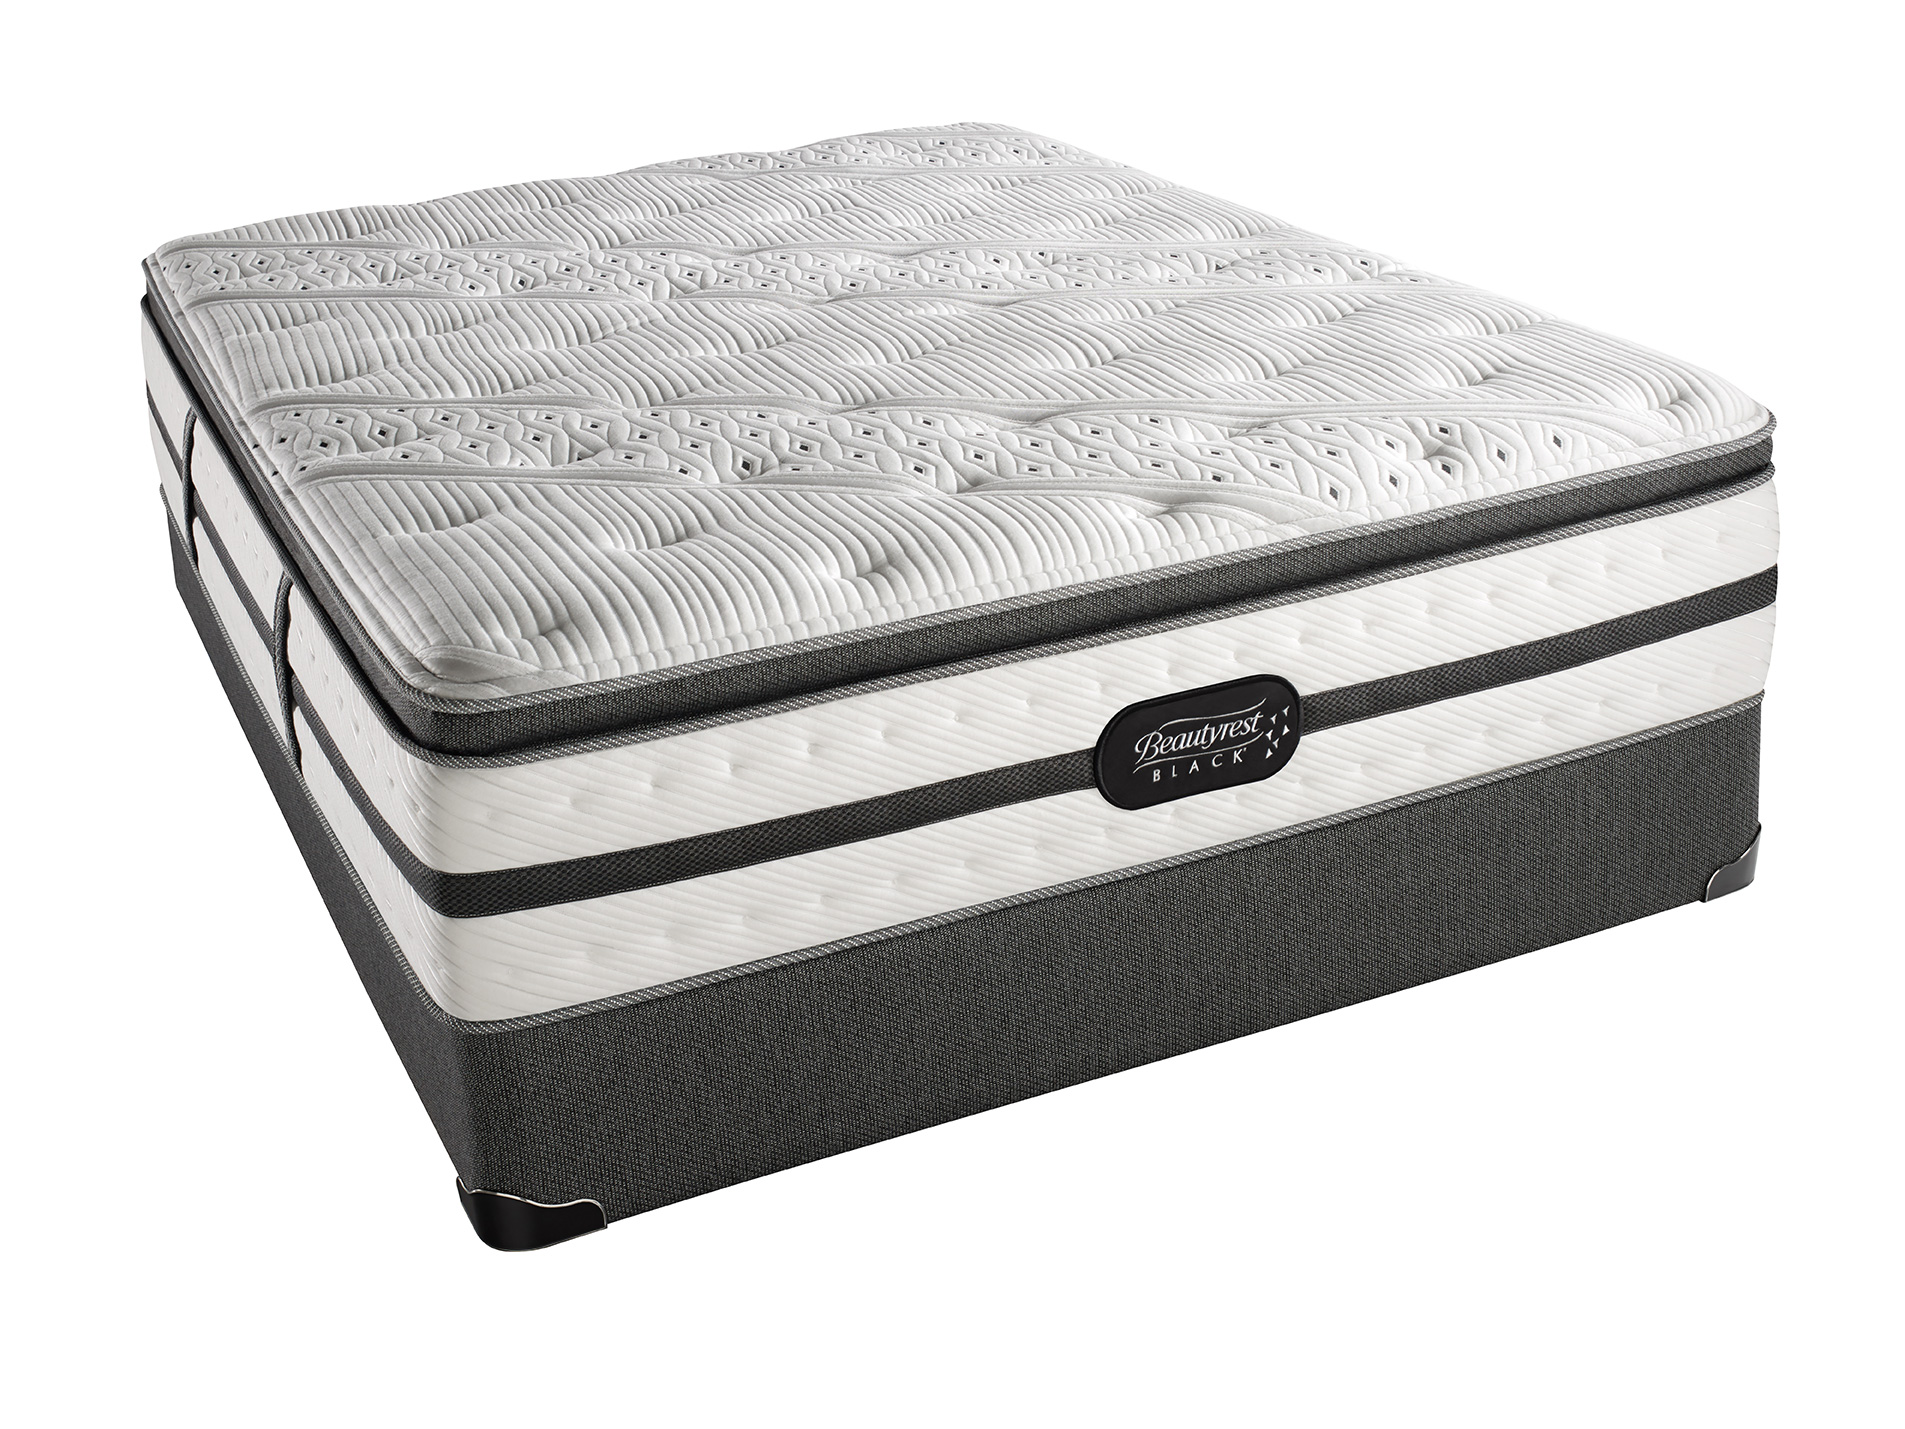 4.6 simmons beautyrest elite pillow top mattress